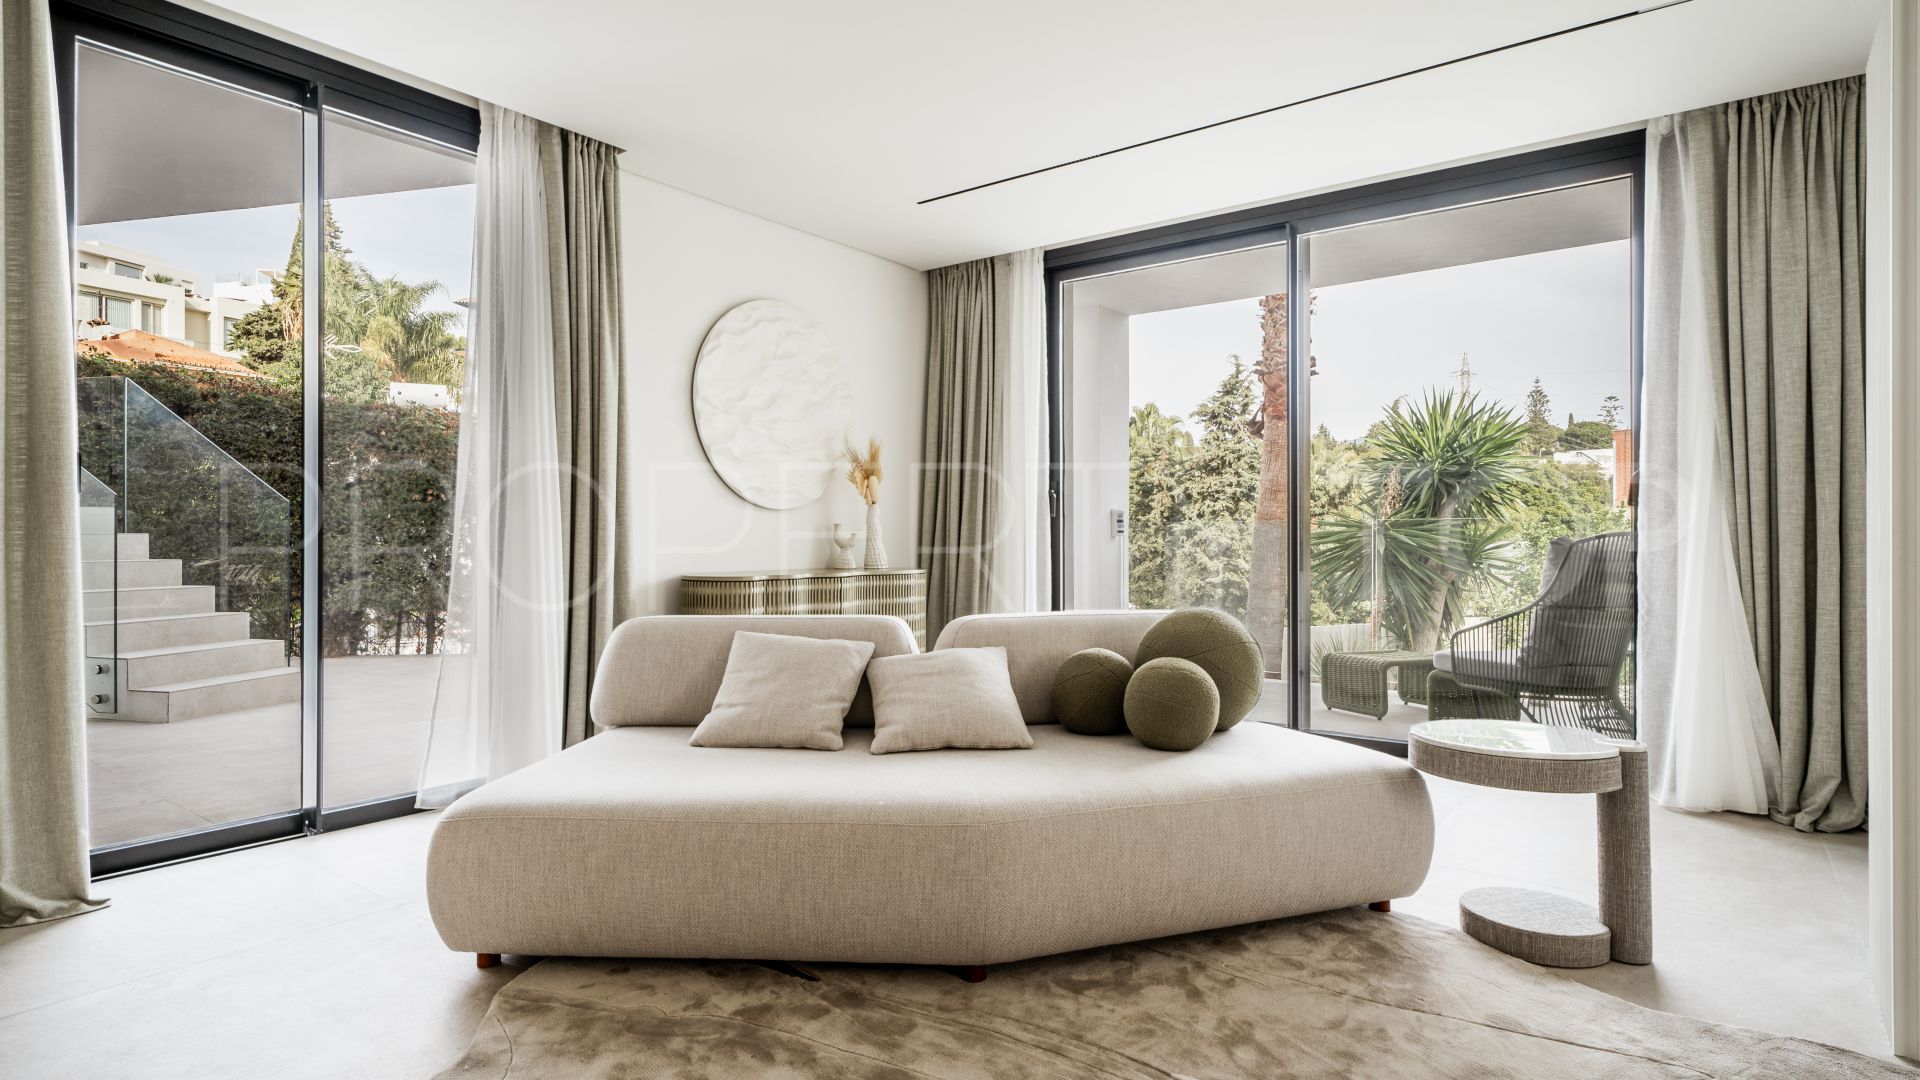 For sale villa with 5 bedrooms in Marbella - Puerto Banus